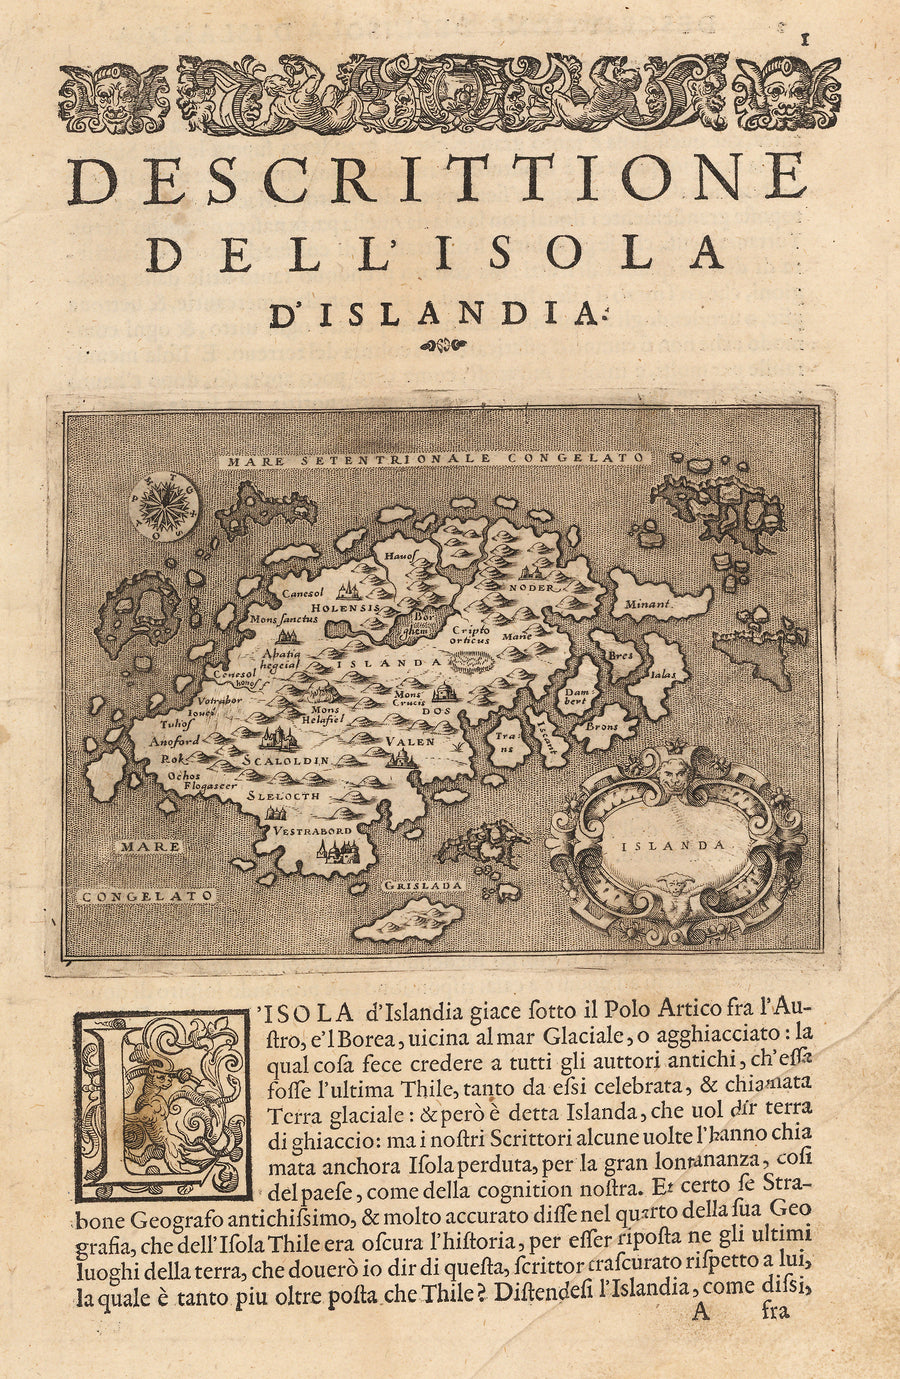 Descrittione Del l’Isola d’Islandia by Porcacchi, Icleand : HJB Maps